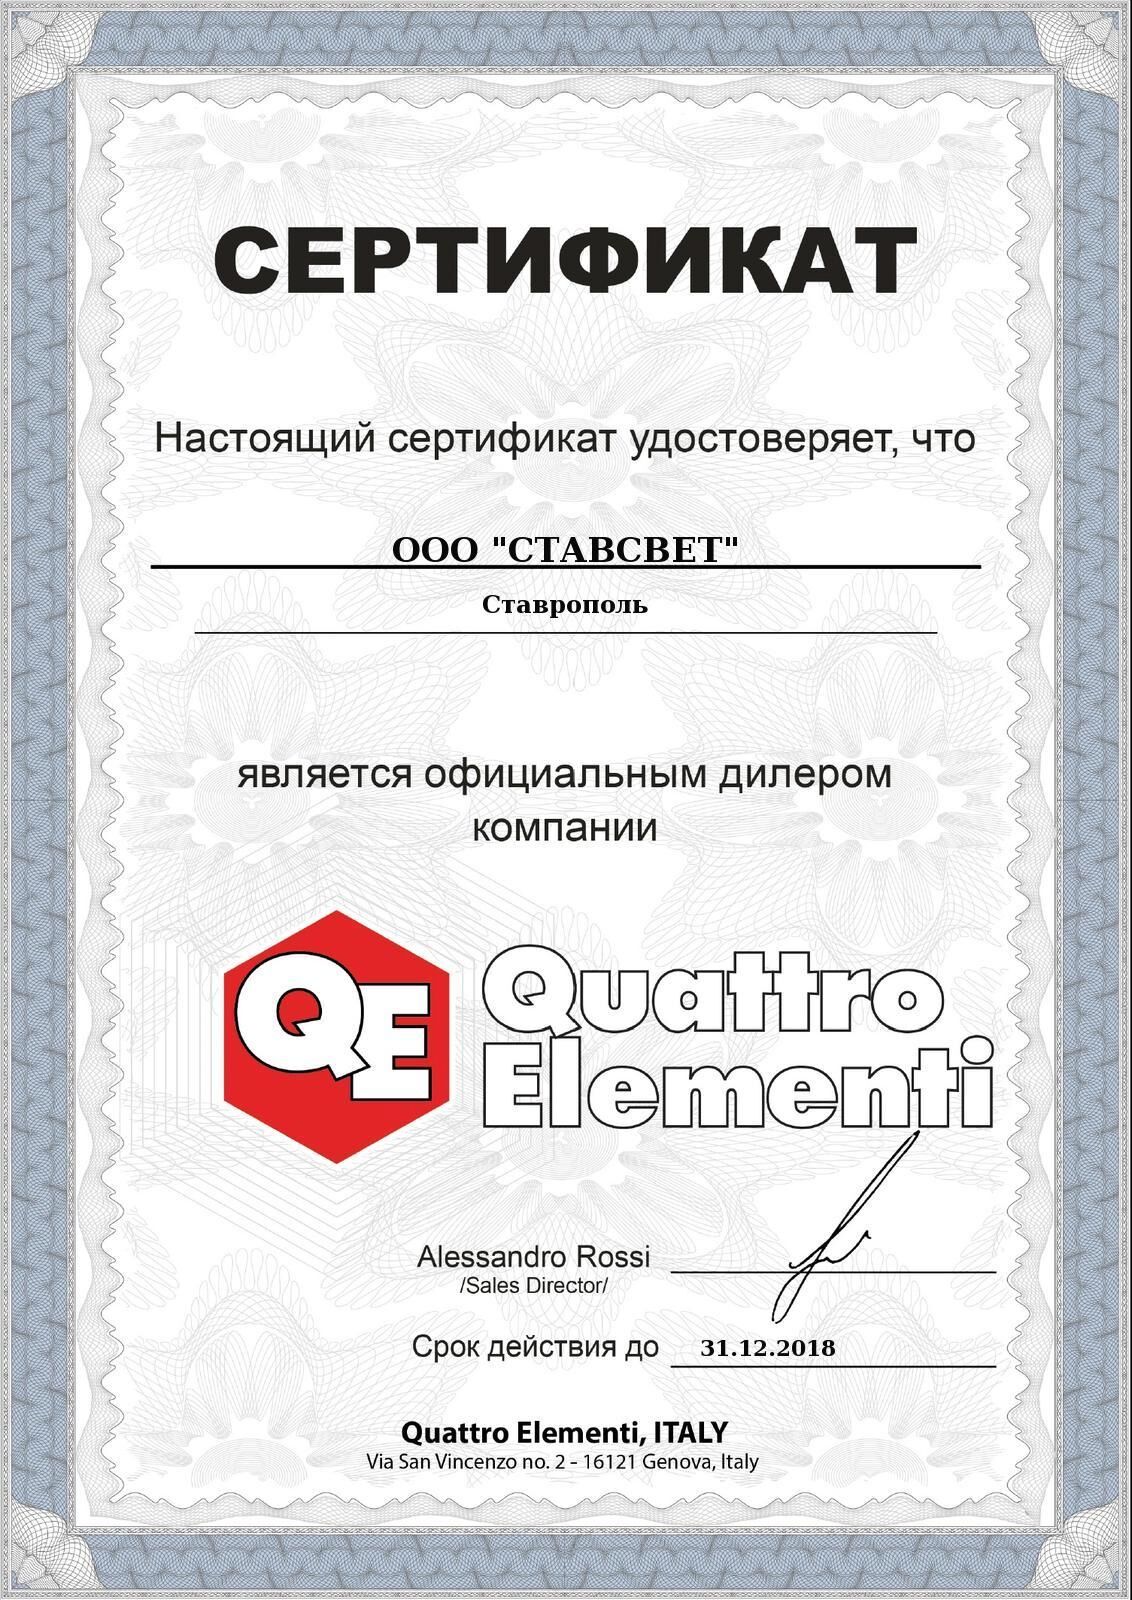 Сертификат дистрибьютора от компании «Quattro Elementi»